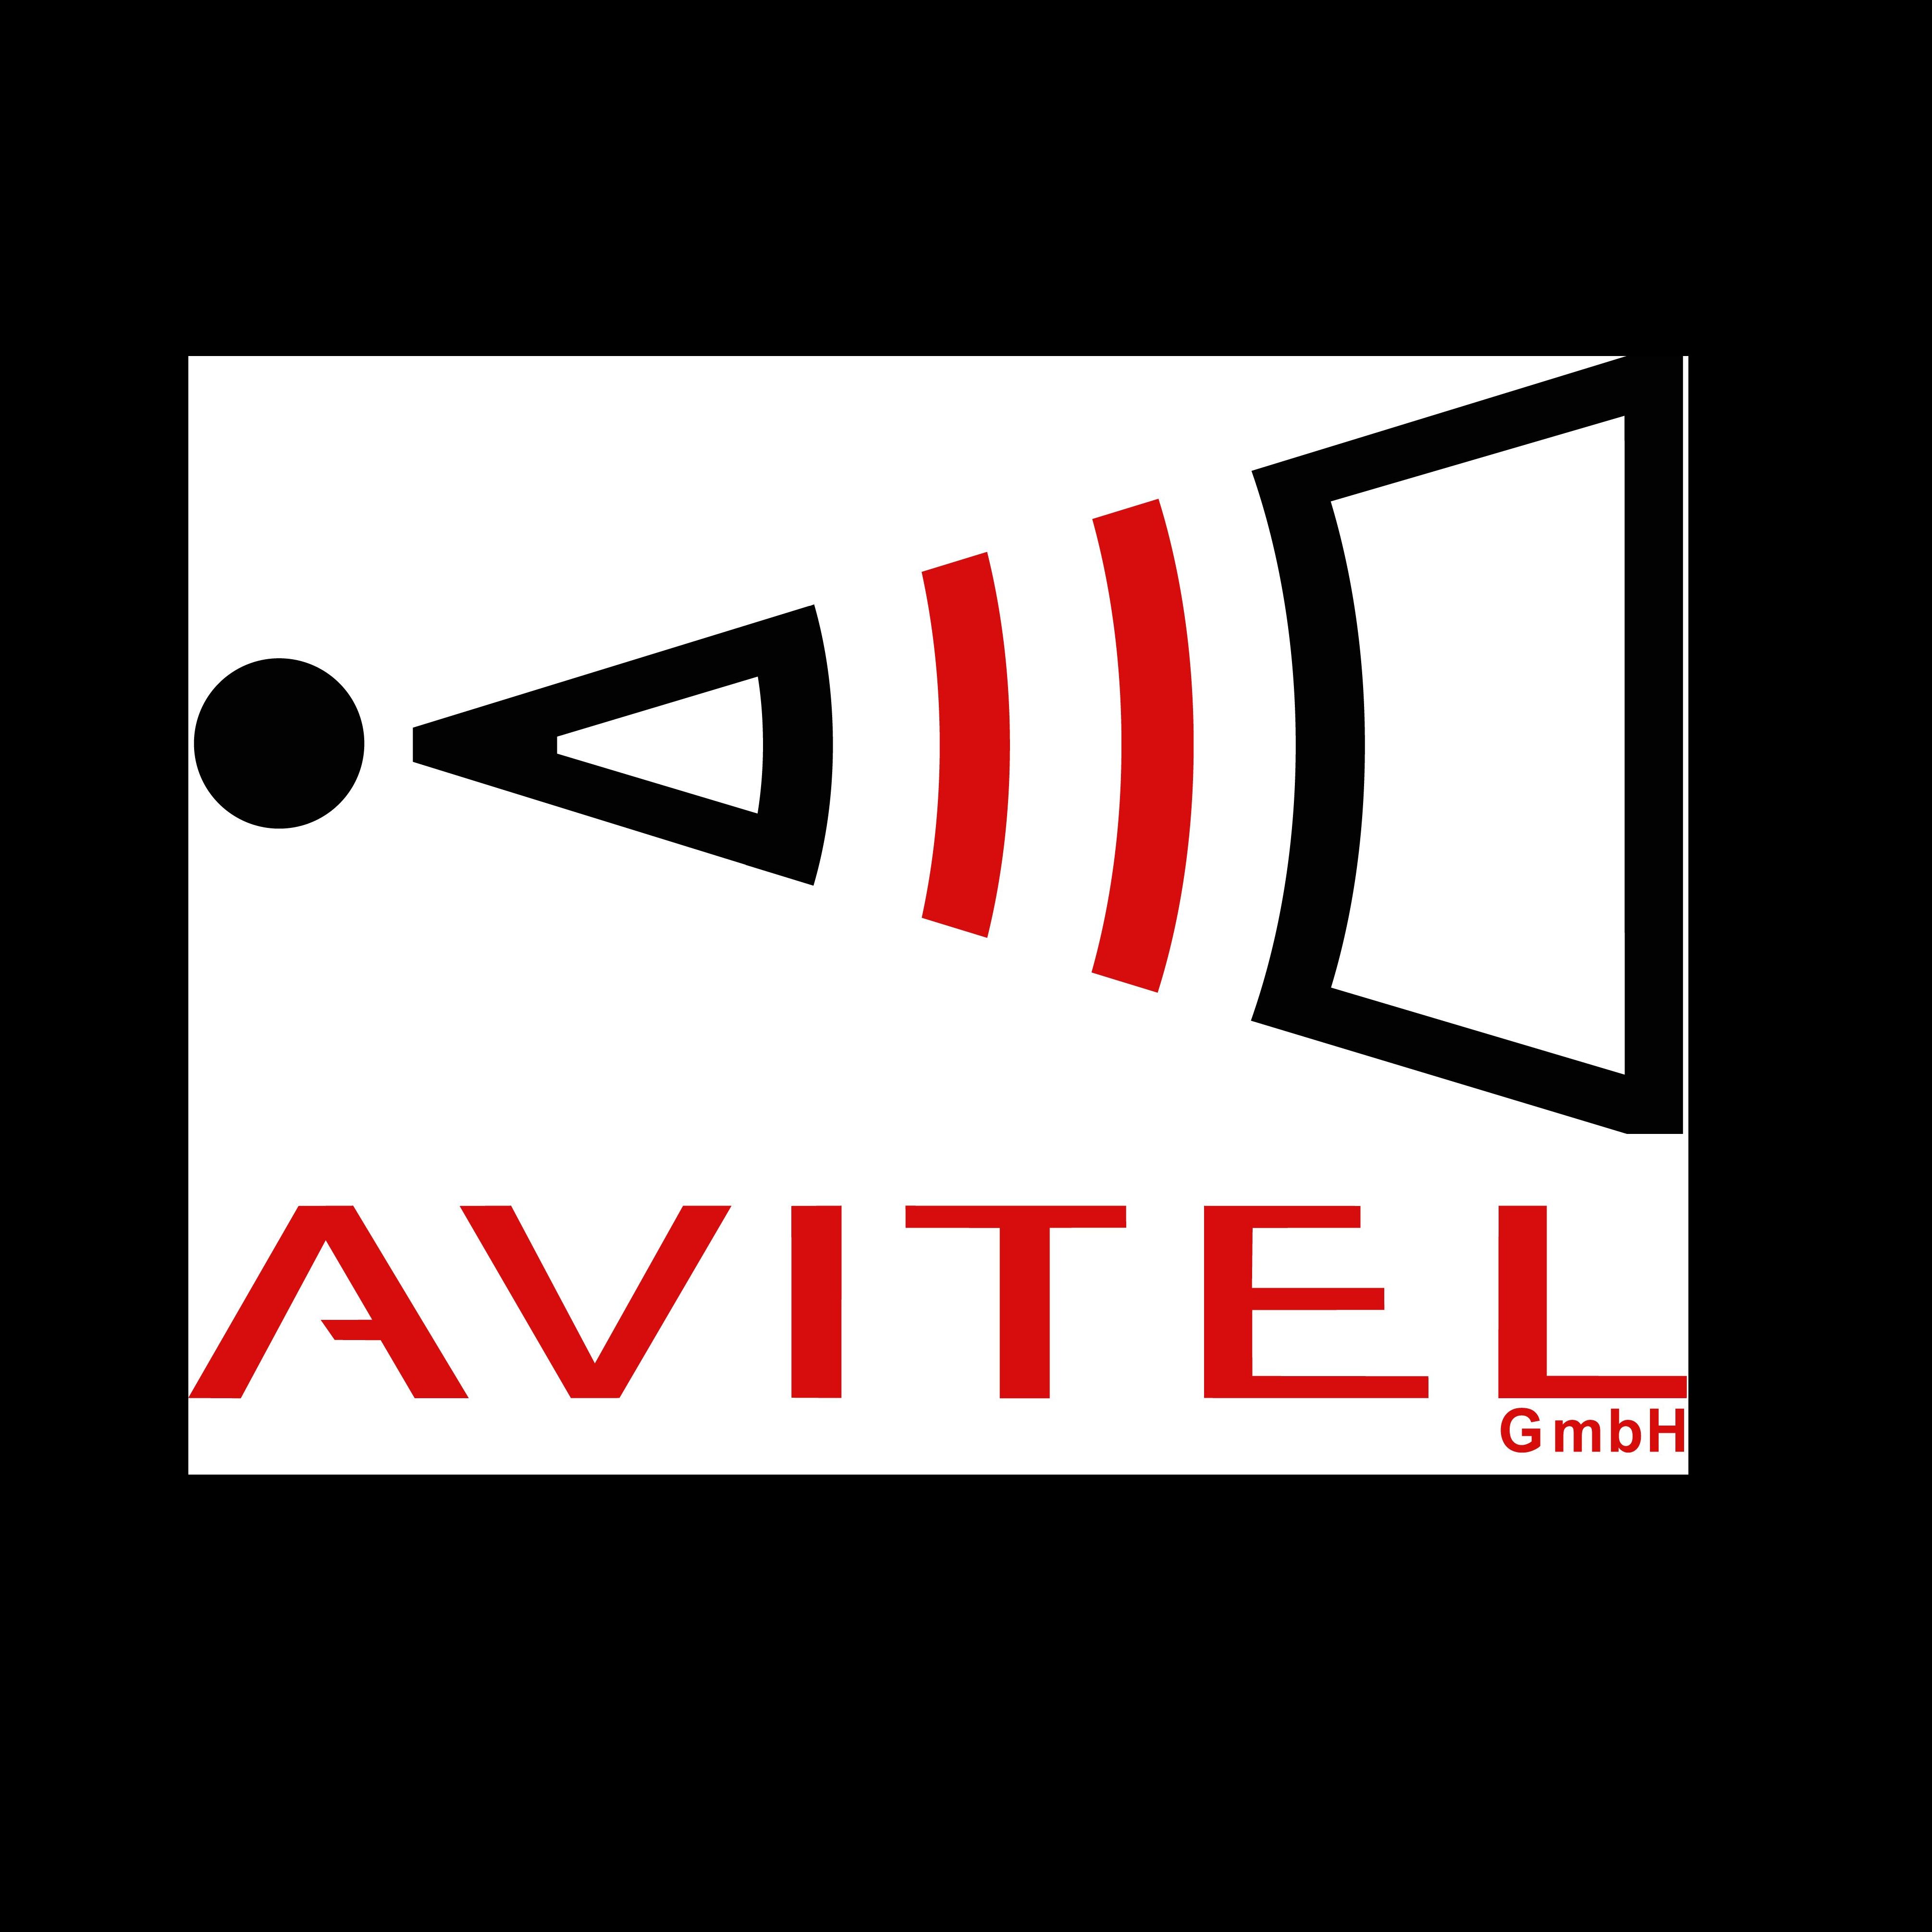 Avitel GmbH